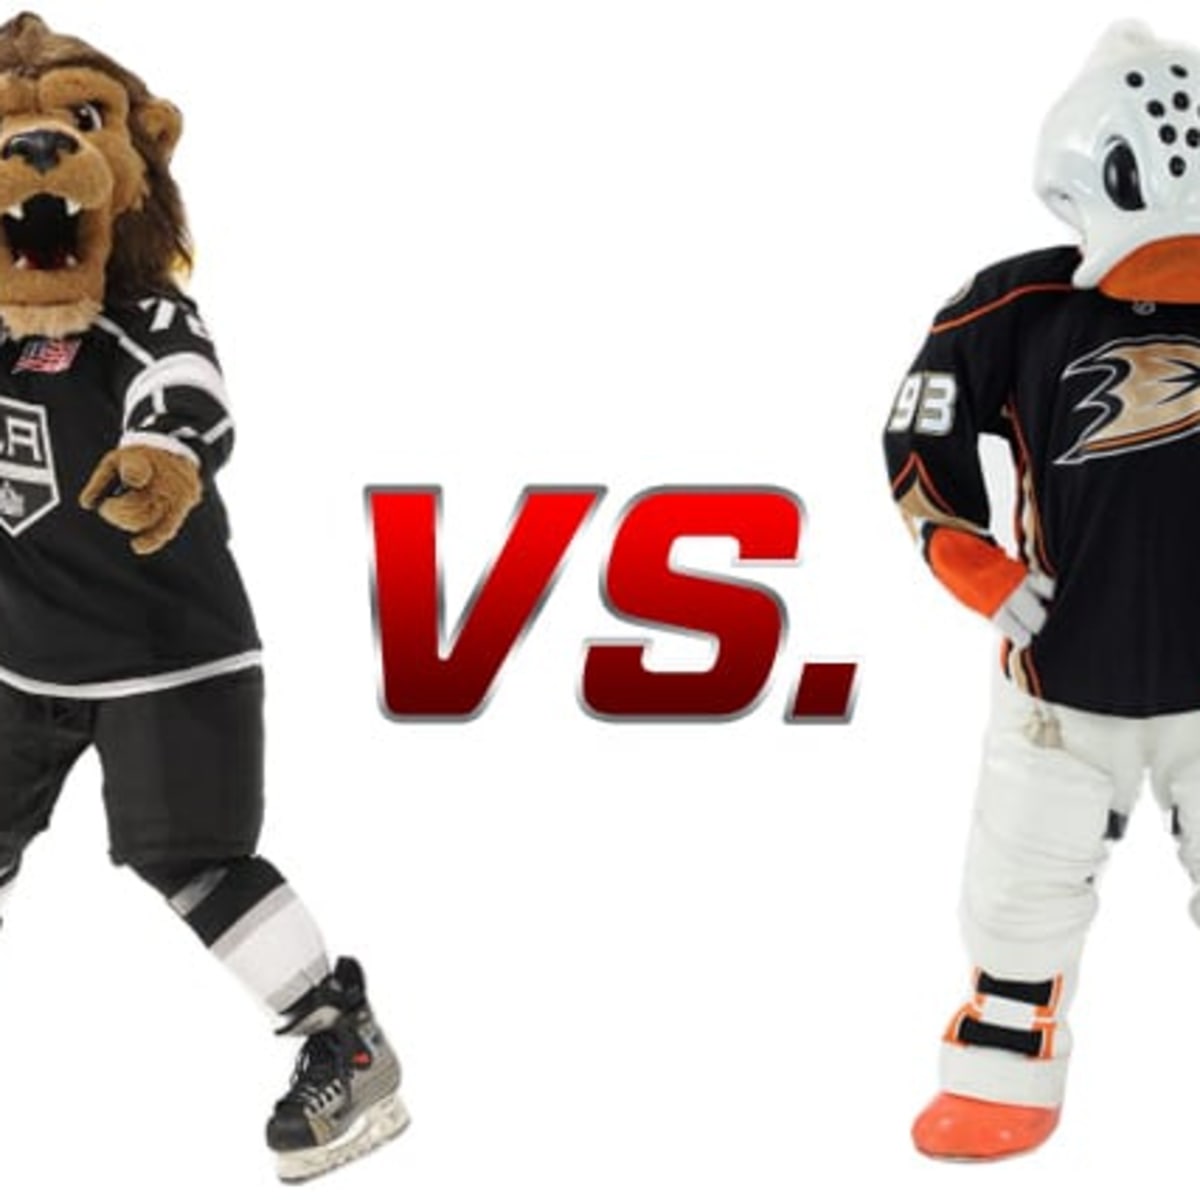 Los Angeles Kings vs. Anaheim Ducks: Mascot Showdown! - The Hockey News